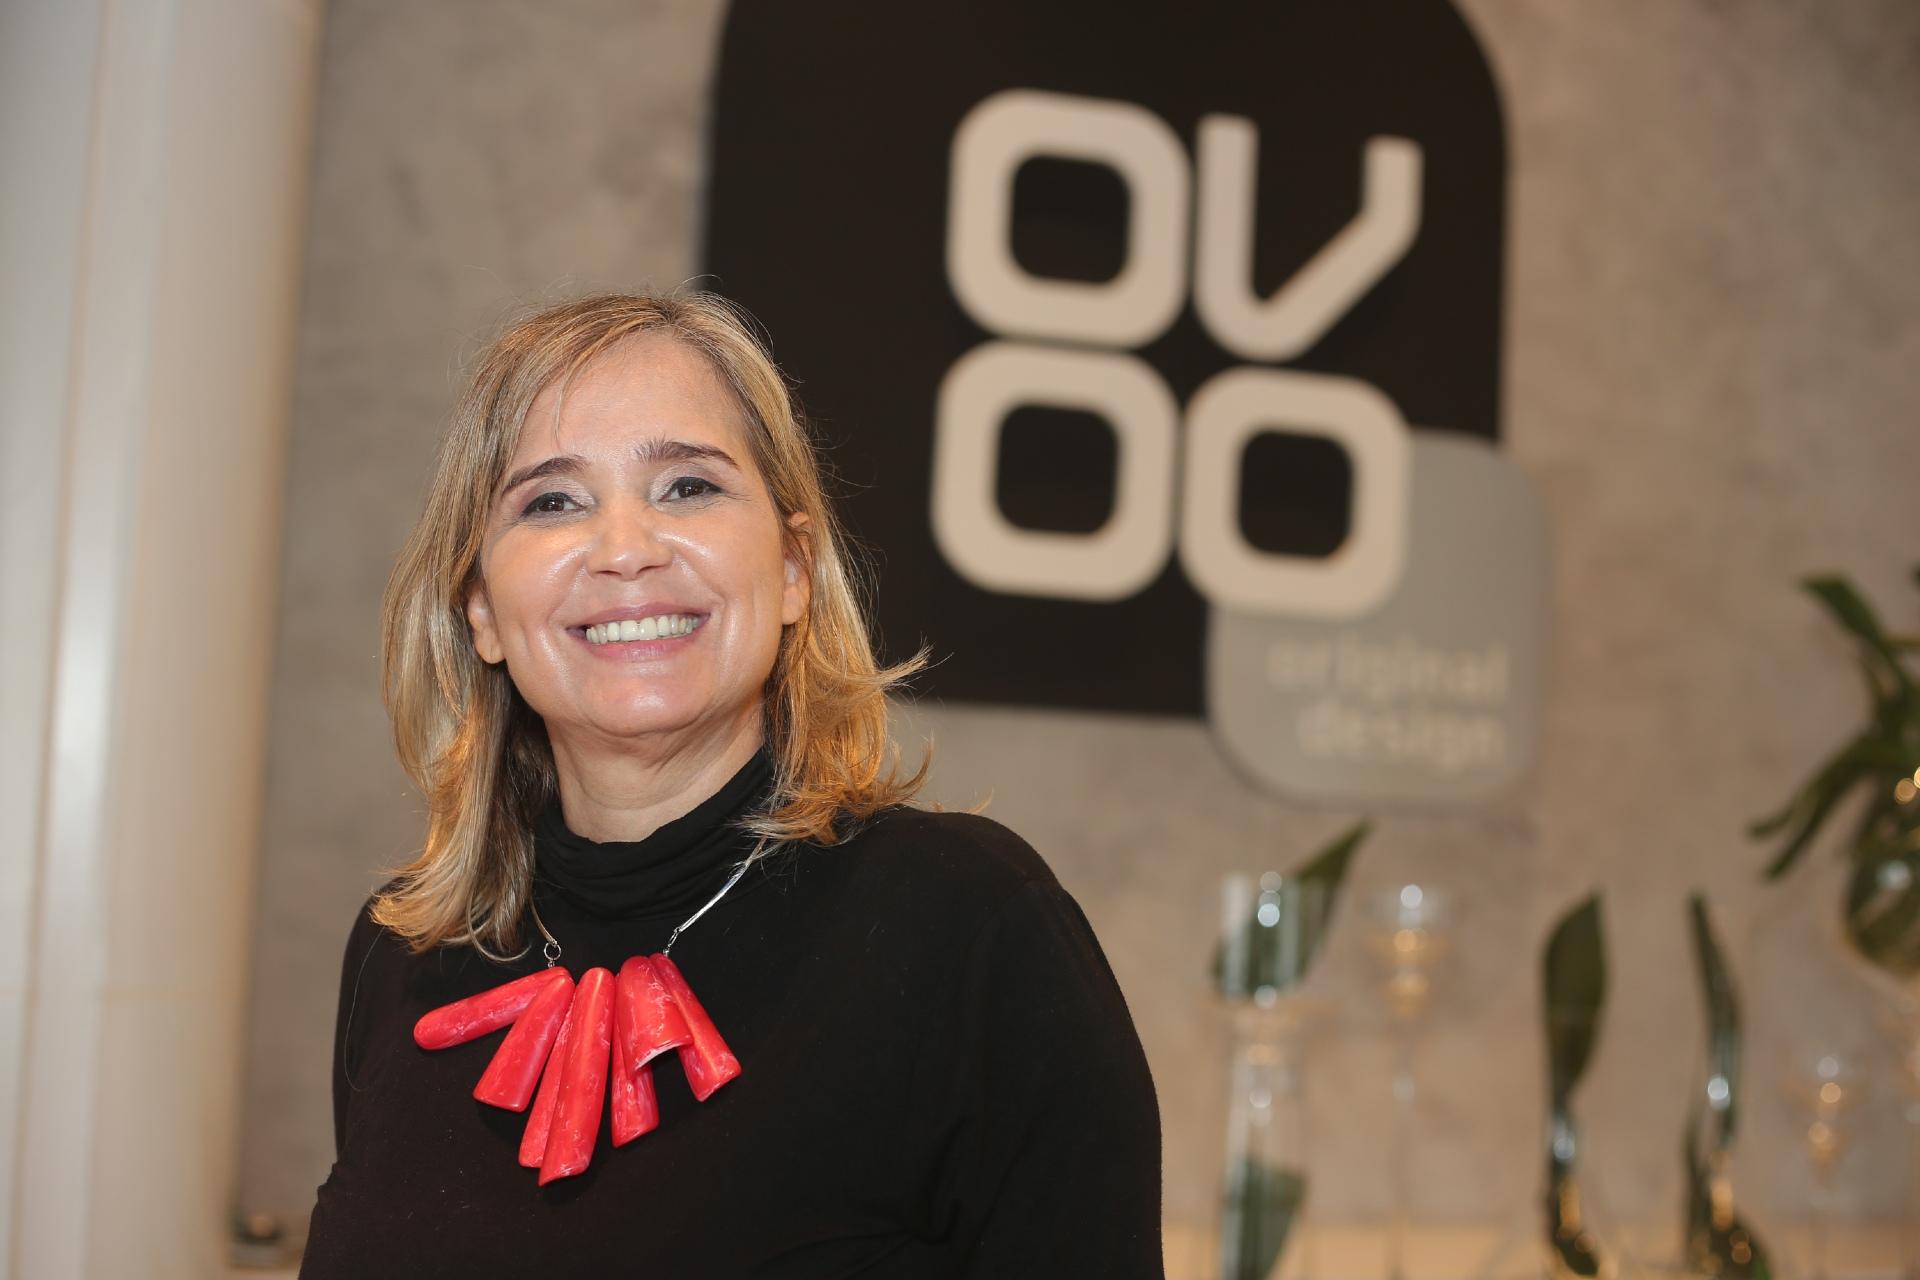 Denise Gouveia, proprietária da loja, além da unidade no Recife, lançou este ano uma loja da Ovoo em Caruaru. Foto: Débora Claro/JC360